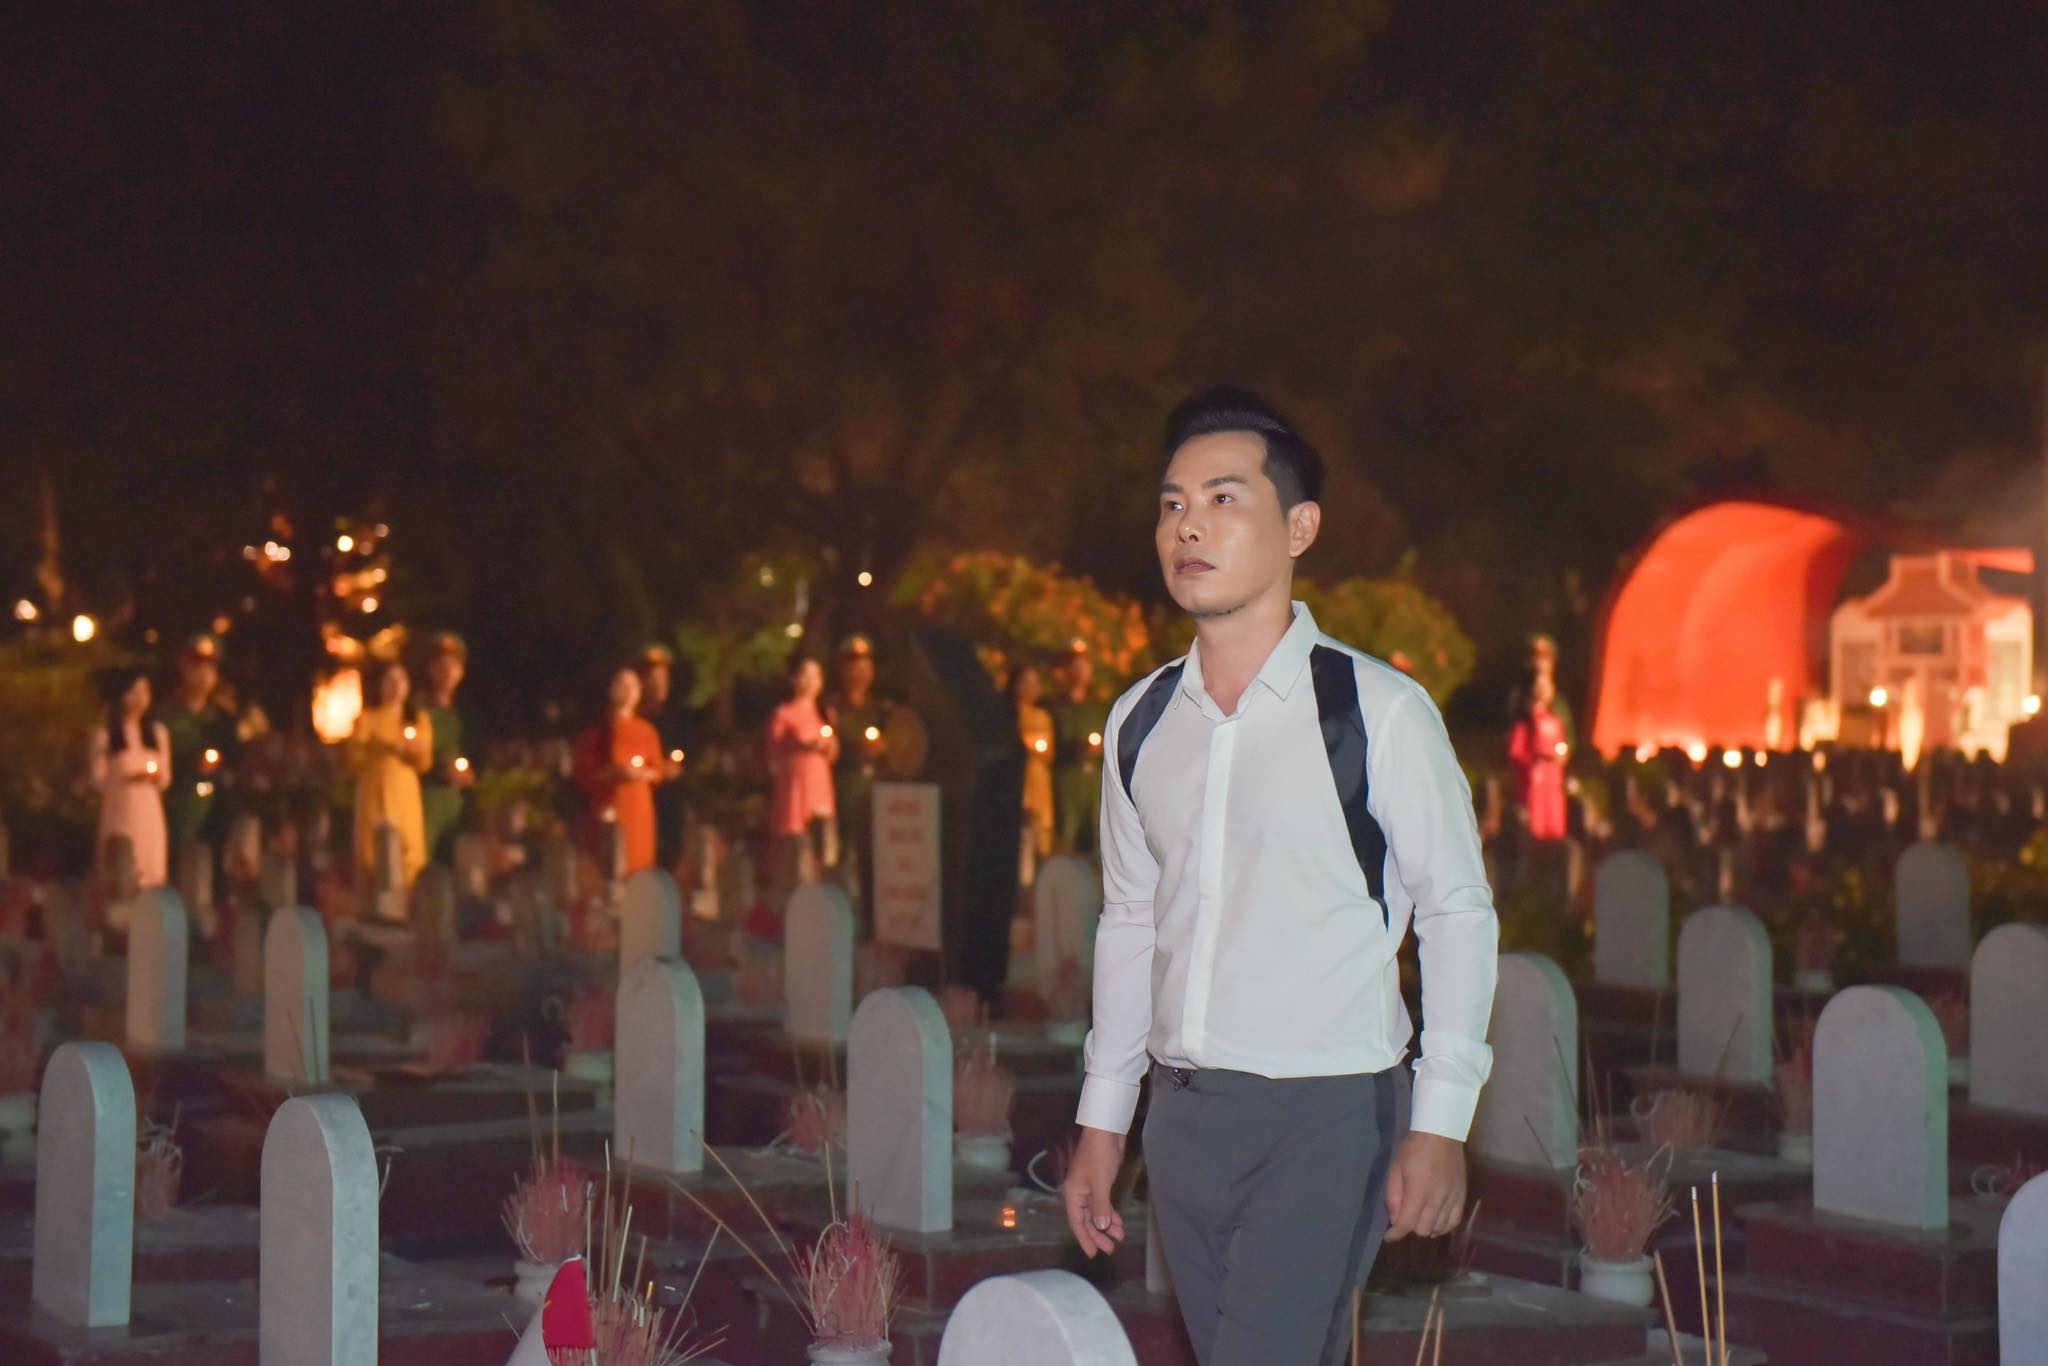 Tâm tình của ca sĩ Trường Kha khi hát bên mộ Hoa Đăng 7 Tâm tình của ca sĩ Trường Kha khi hát bên mộ Hoa Đăng